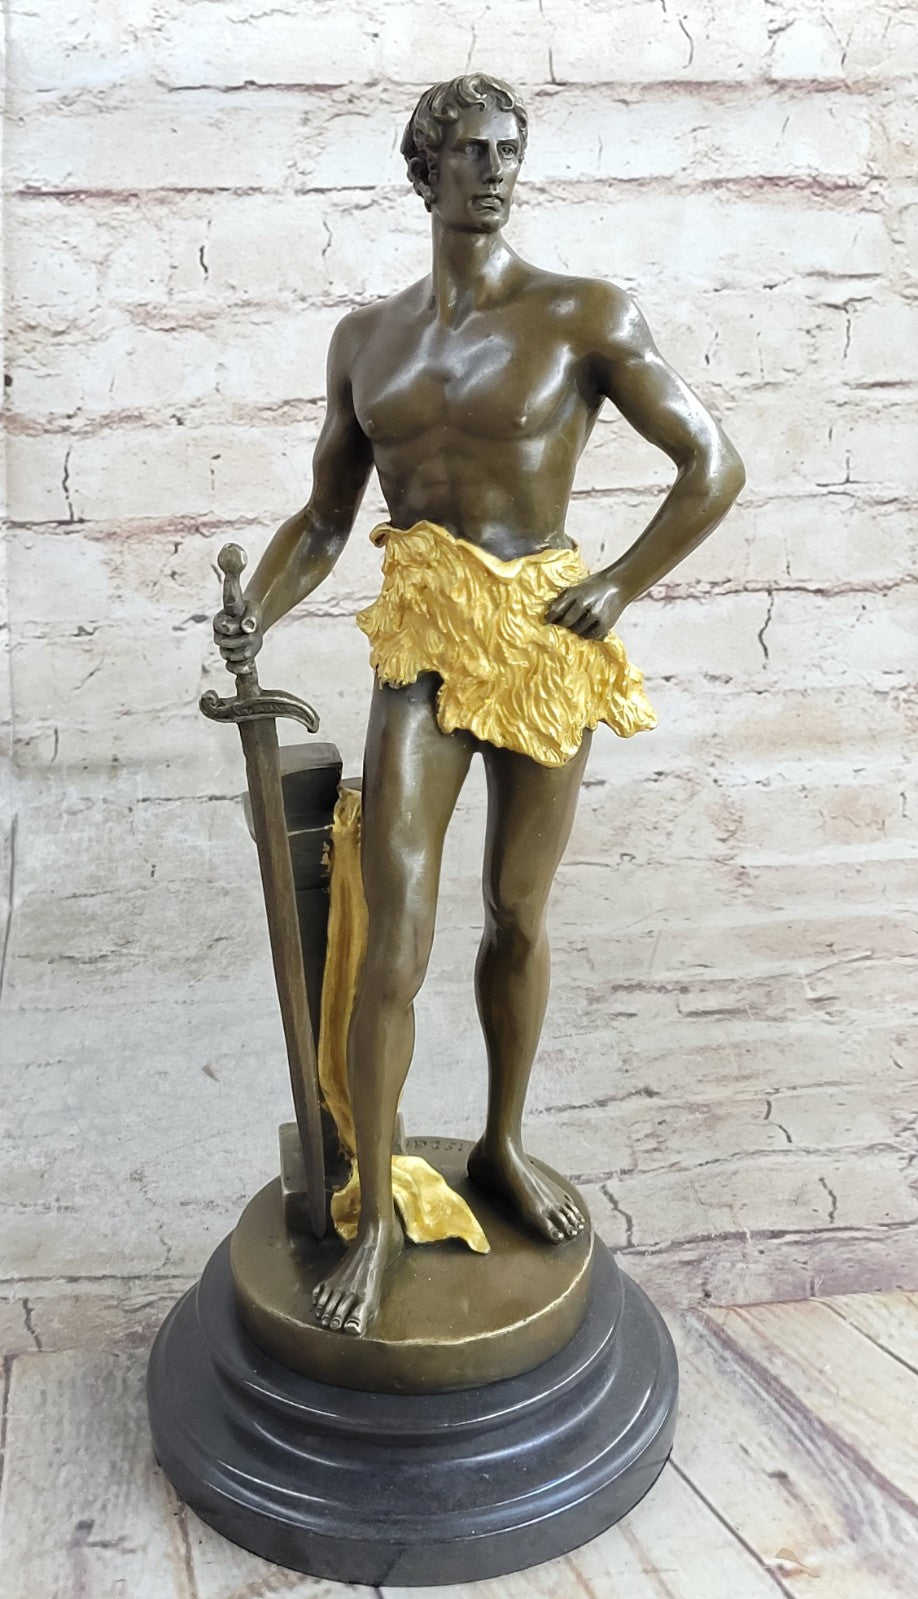 Decor Nude Male Warrior Bronze Sculpture Home Office Decoration Statue Figure